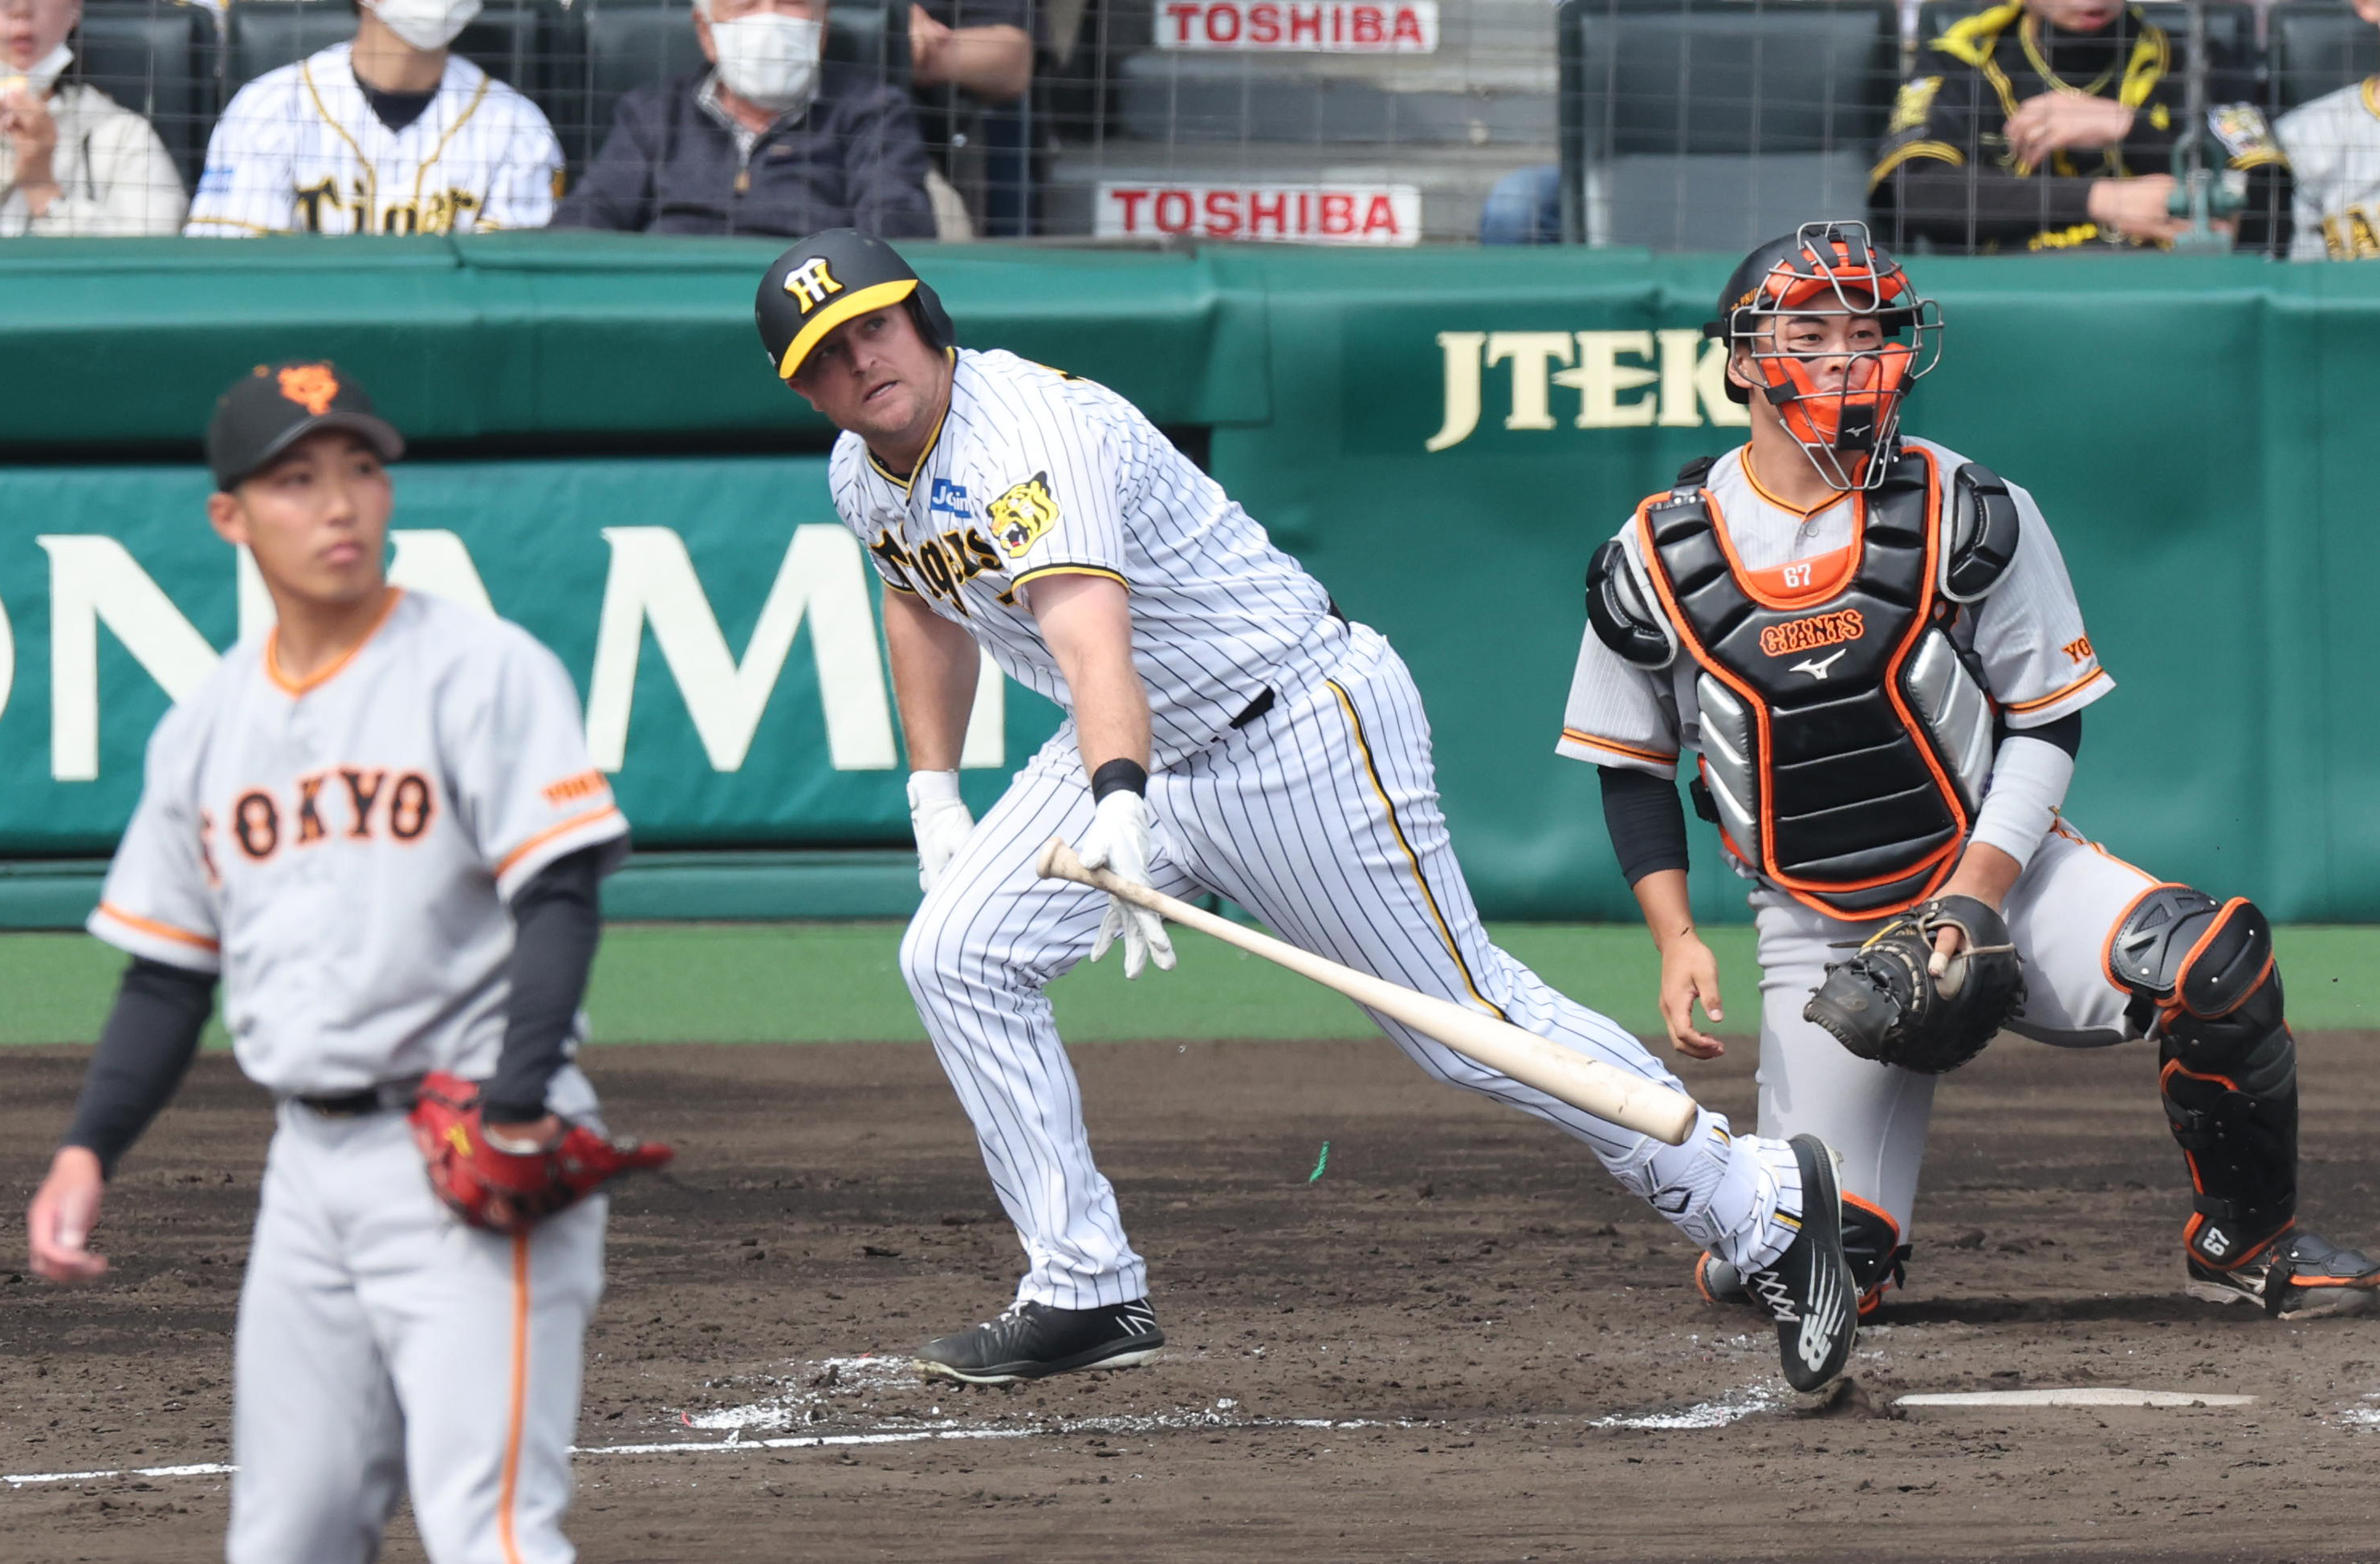 阪神の新外国人・ノイジーが対外試合初安打となる二塁打 先制のホーム